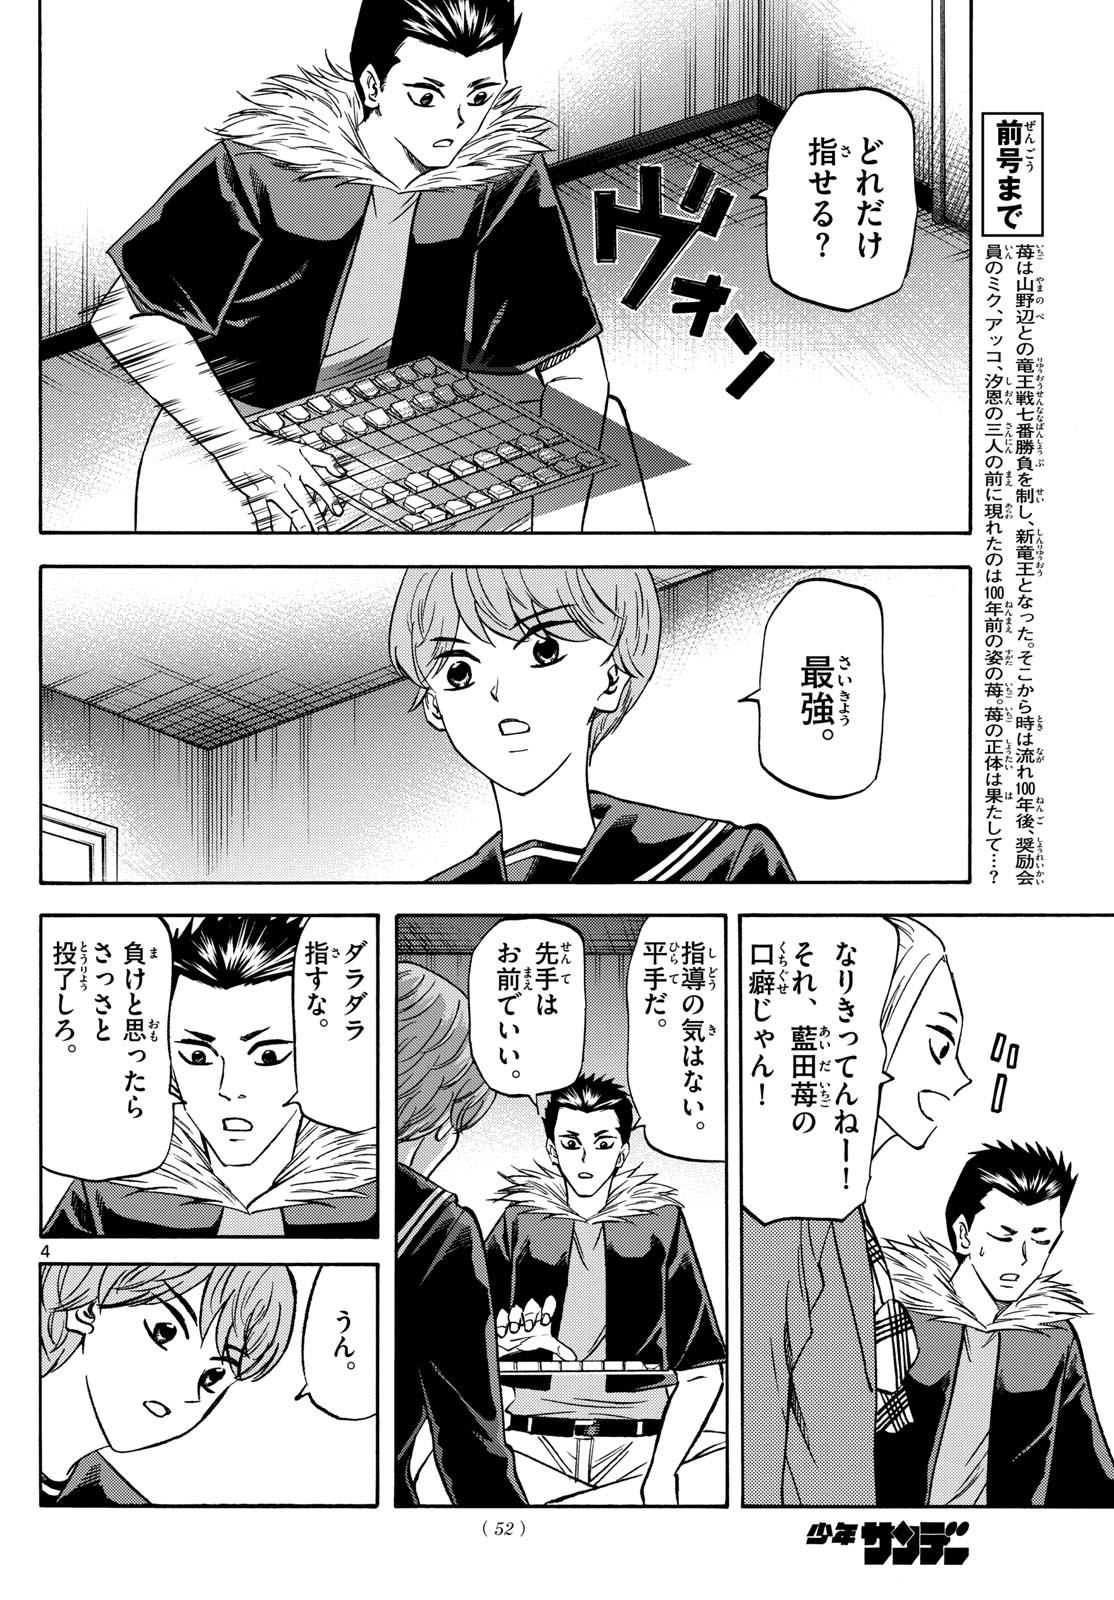 Tatsu to Ichigo - Chapter 183 - Page 4